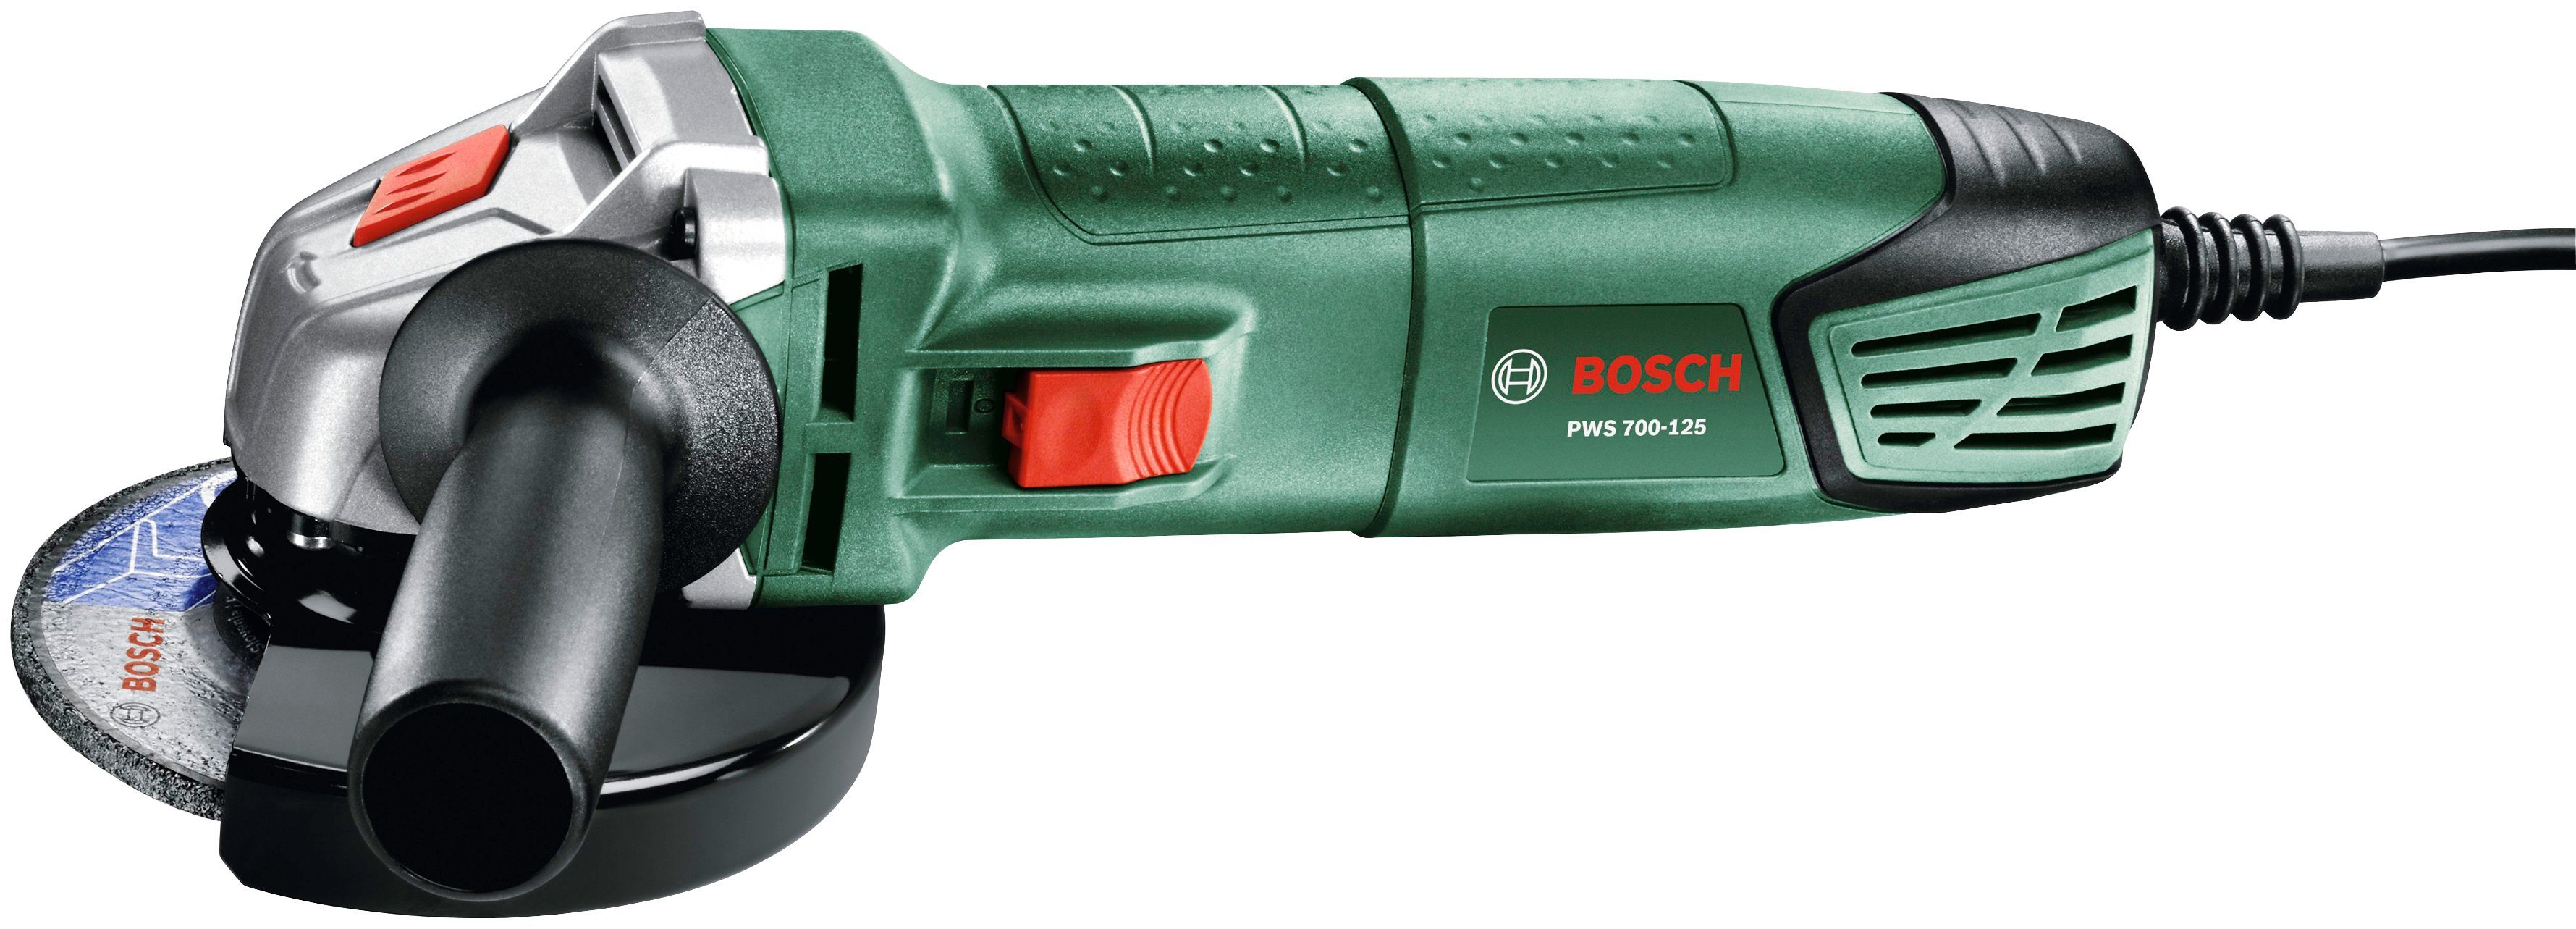 Bosch Home & Garden Winkelschleifer PWS 700-125